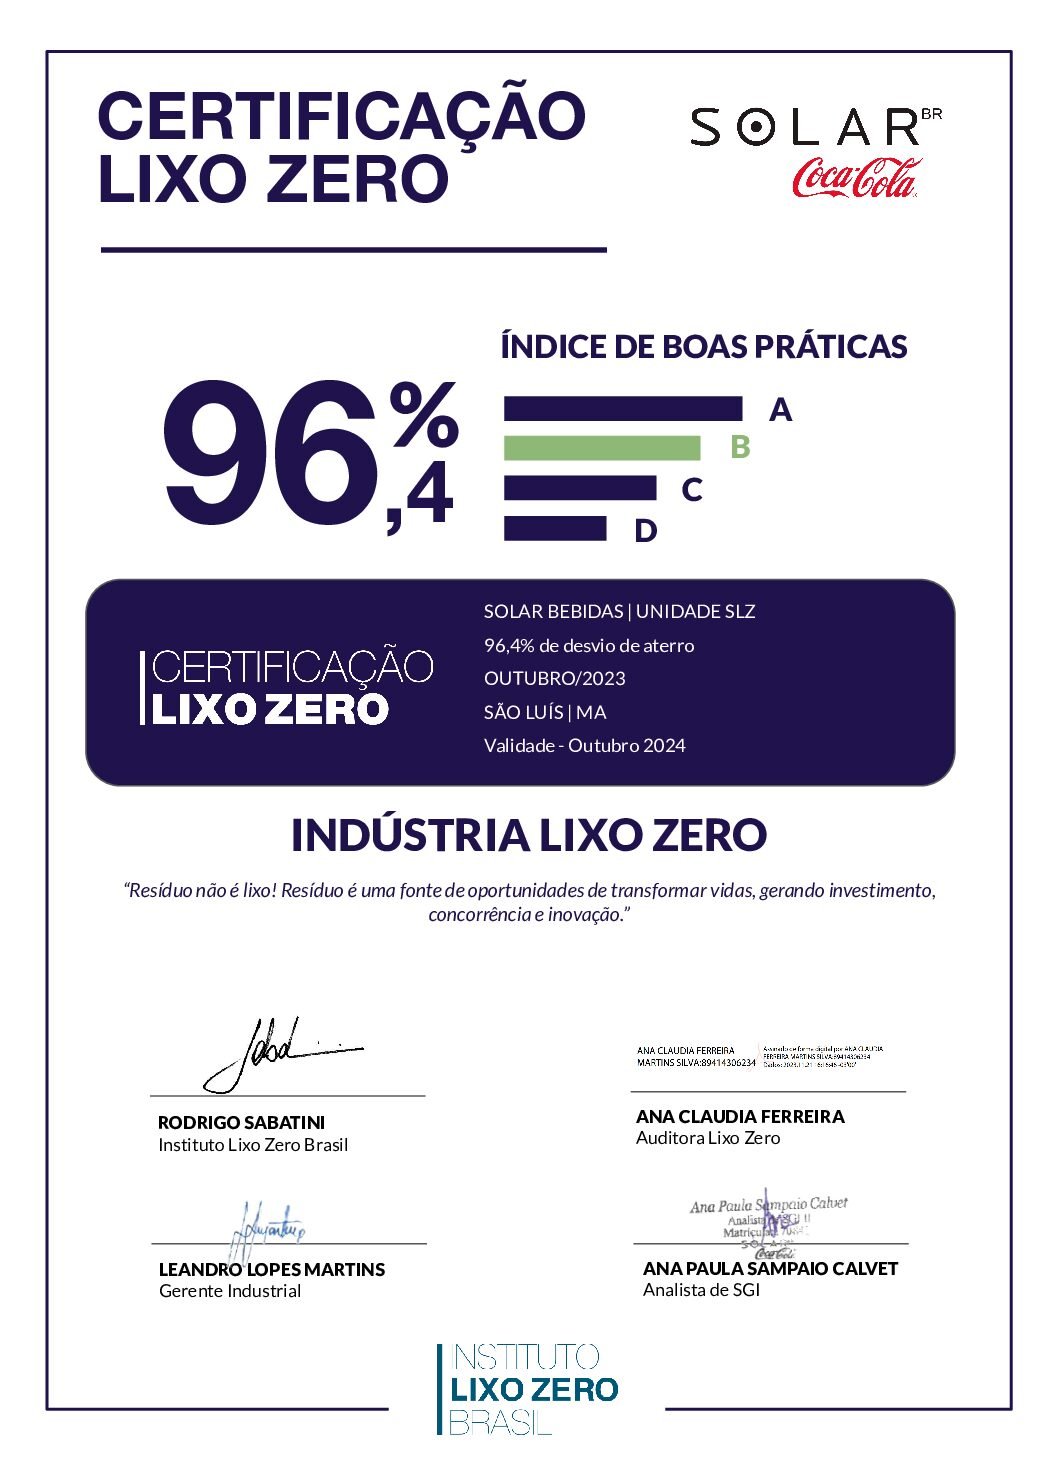 CertificaçãoLixoZero_Solar_SLZ_MA_Outubro_2023 assinado_signed